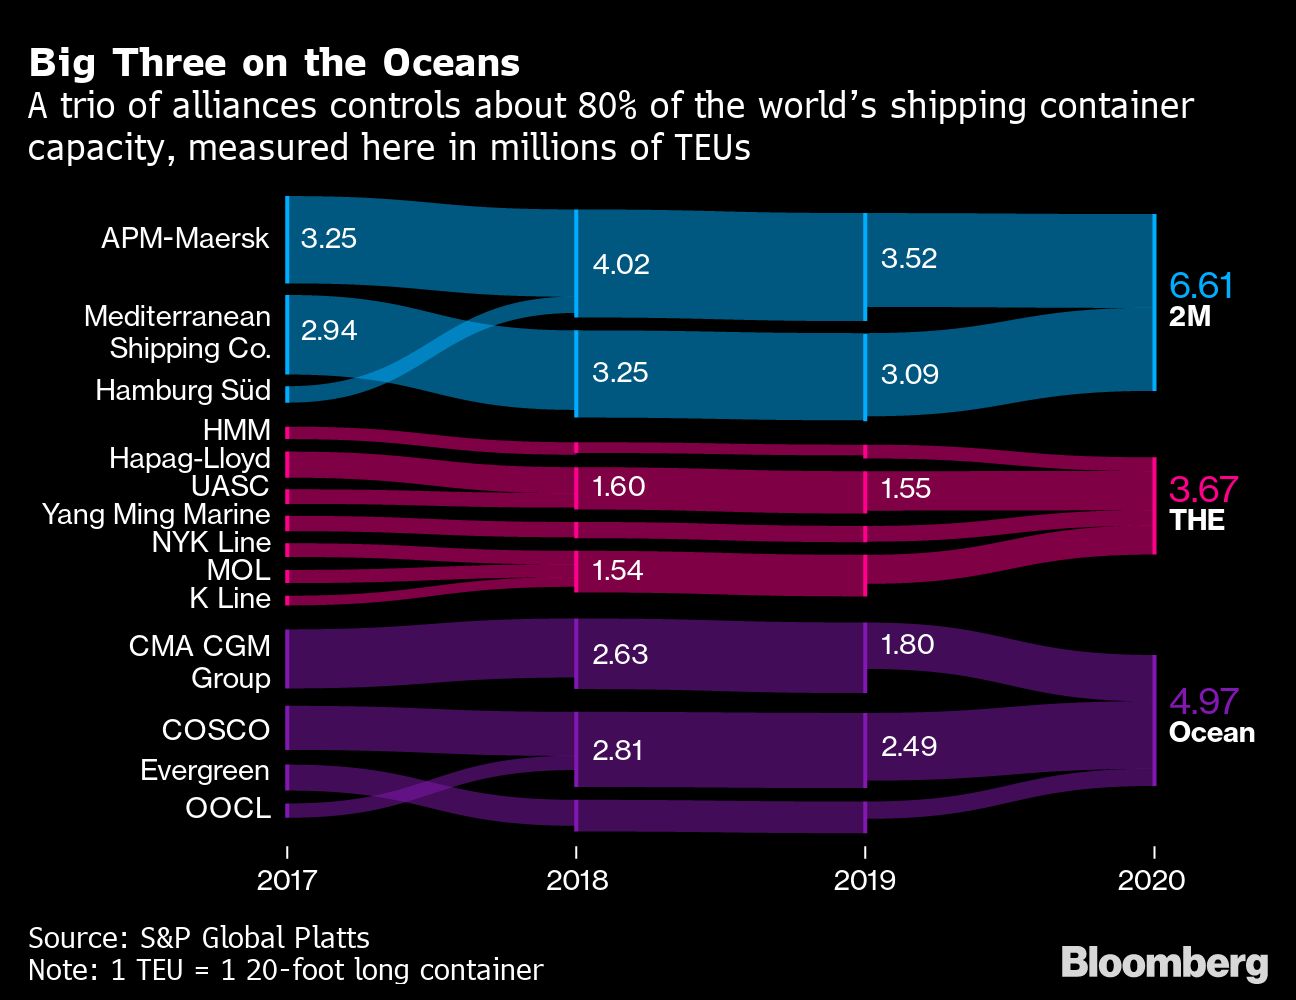 Ocean carriers